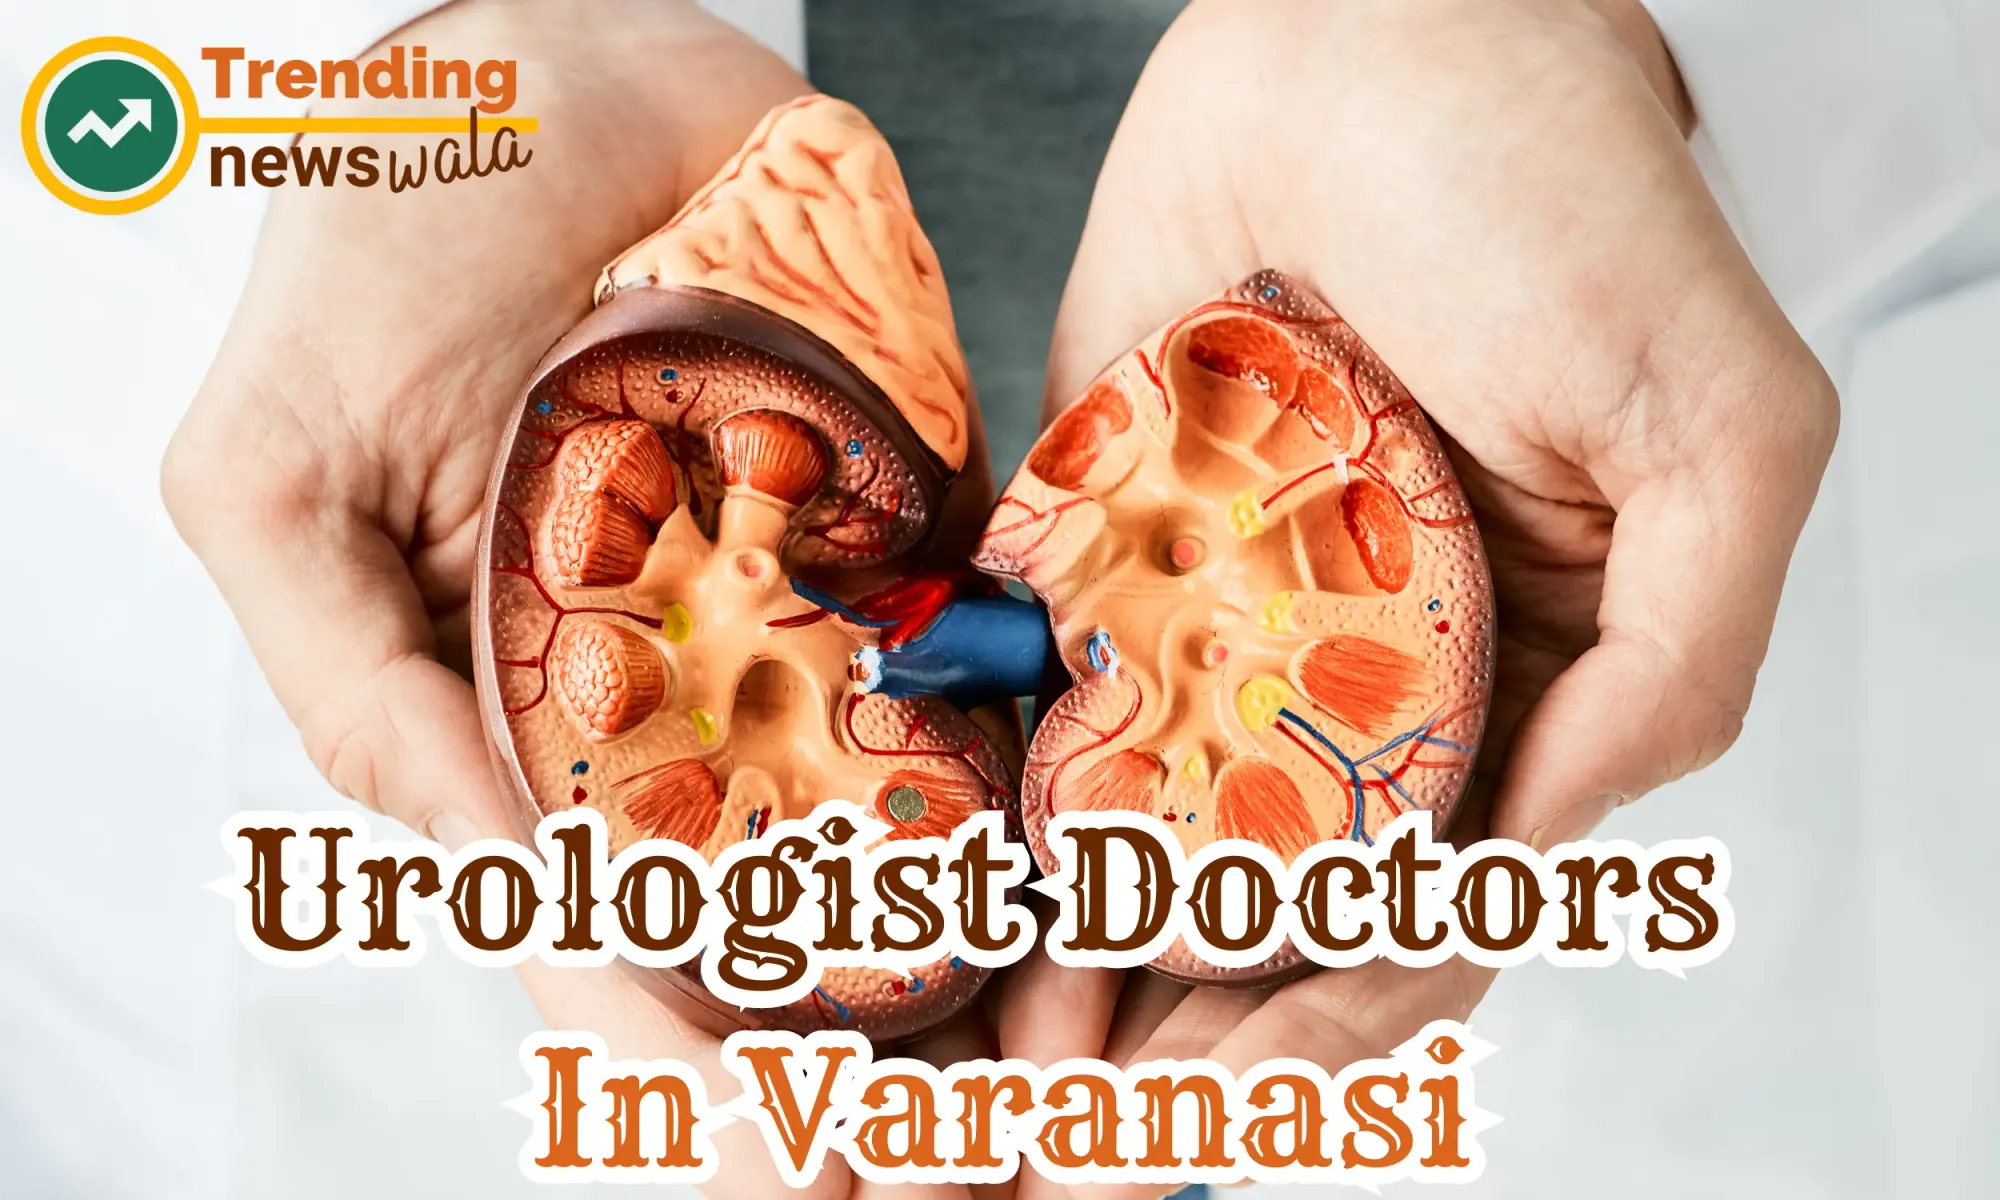 Urologist Doctors In Varanasi